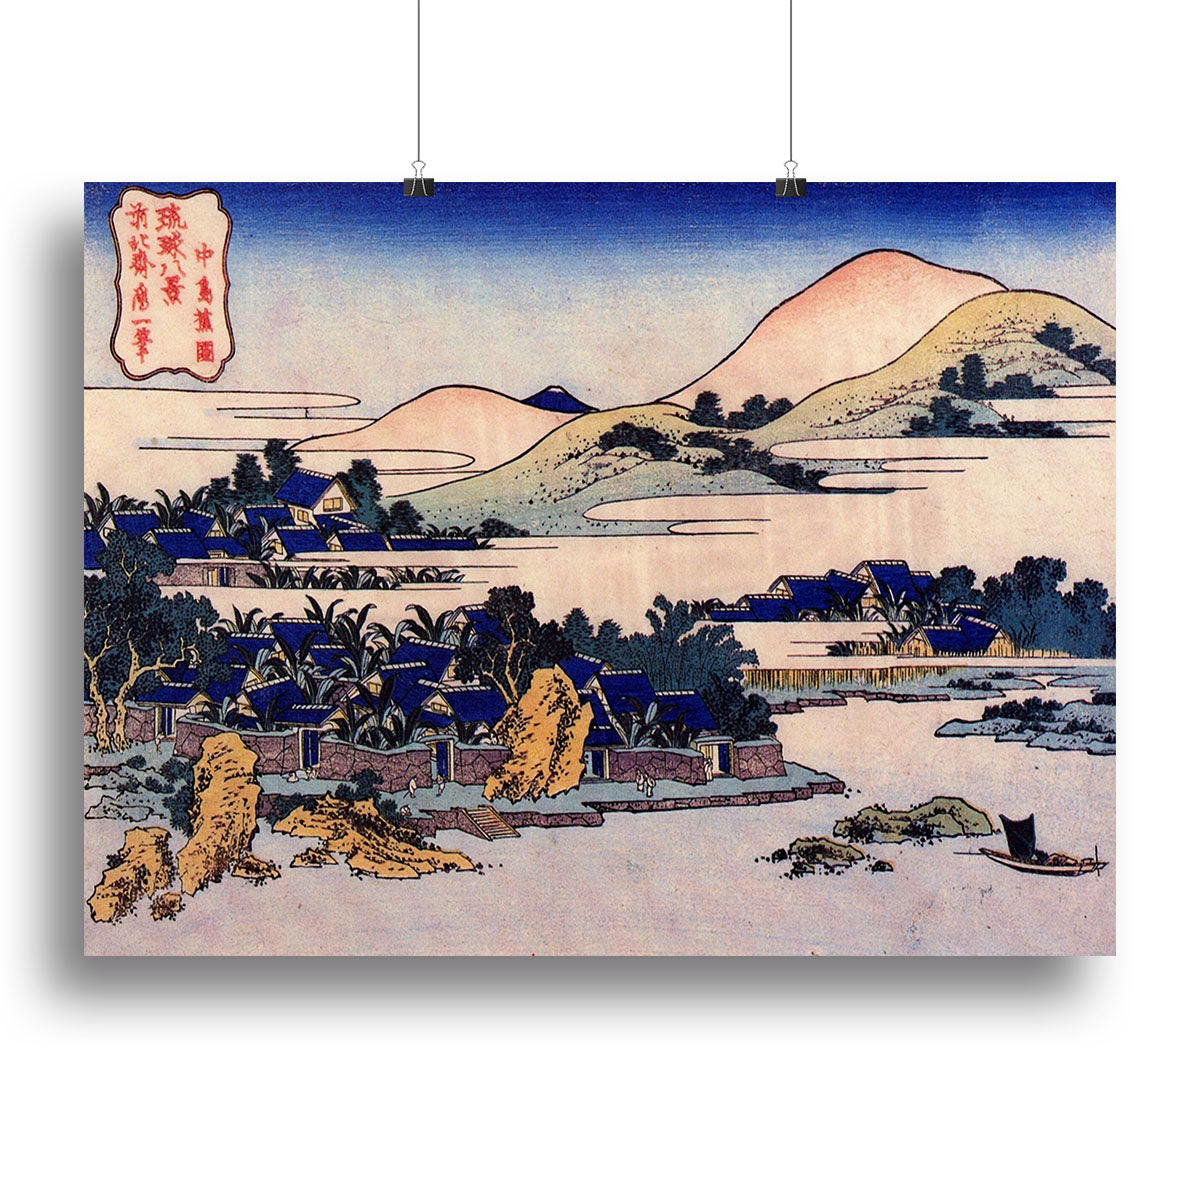 Banana plantation at Chuto by Hokusai Canvas Print or Poster - Canvas Art Rocks - 2